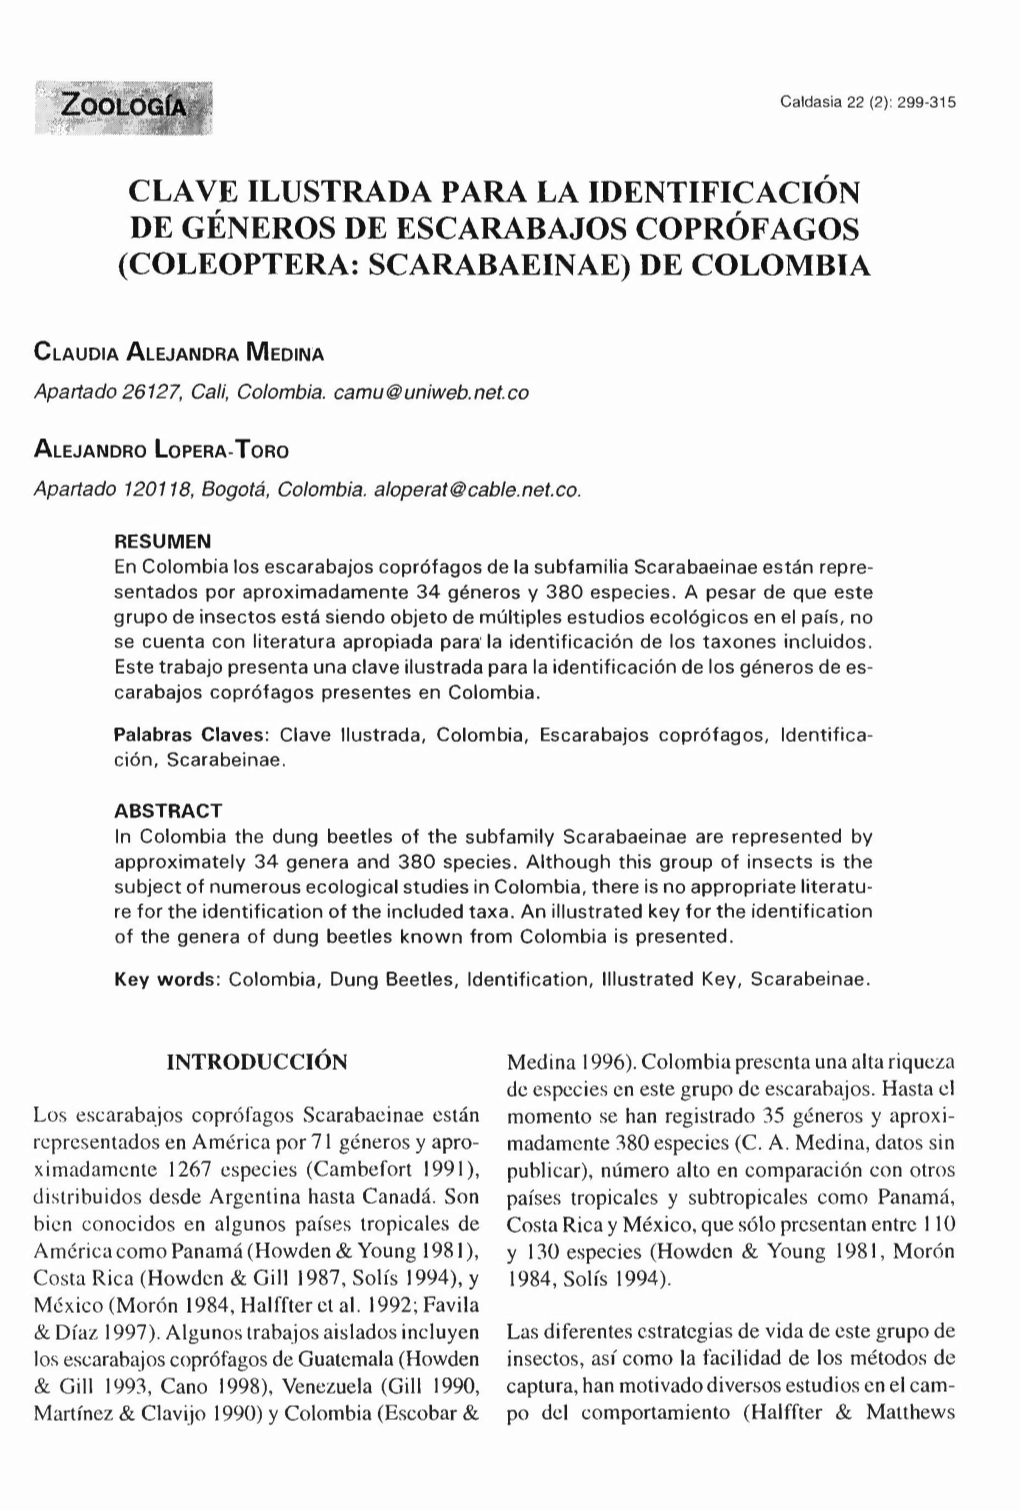 Clave Ilustrada Para La Identificación De Géneros De Escarabajos Coprófagos (Coleoptera: Scarabaeinae) De Colombia